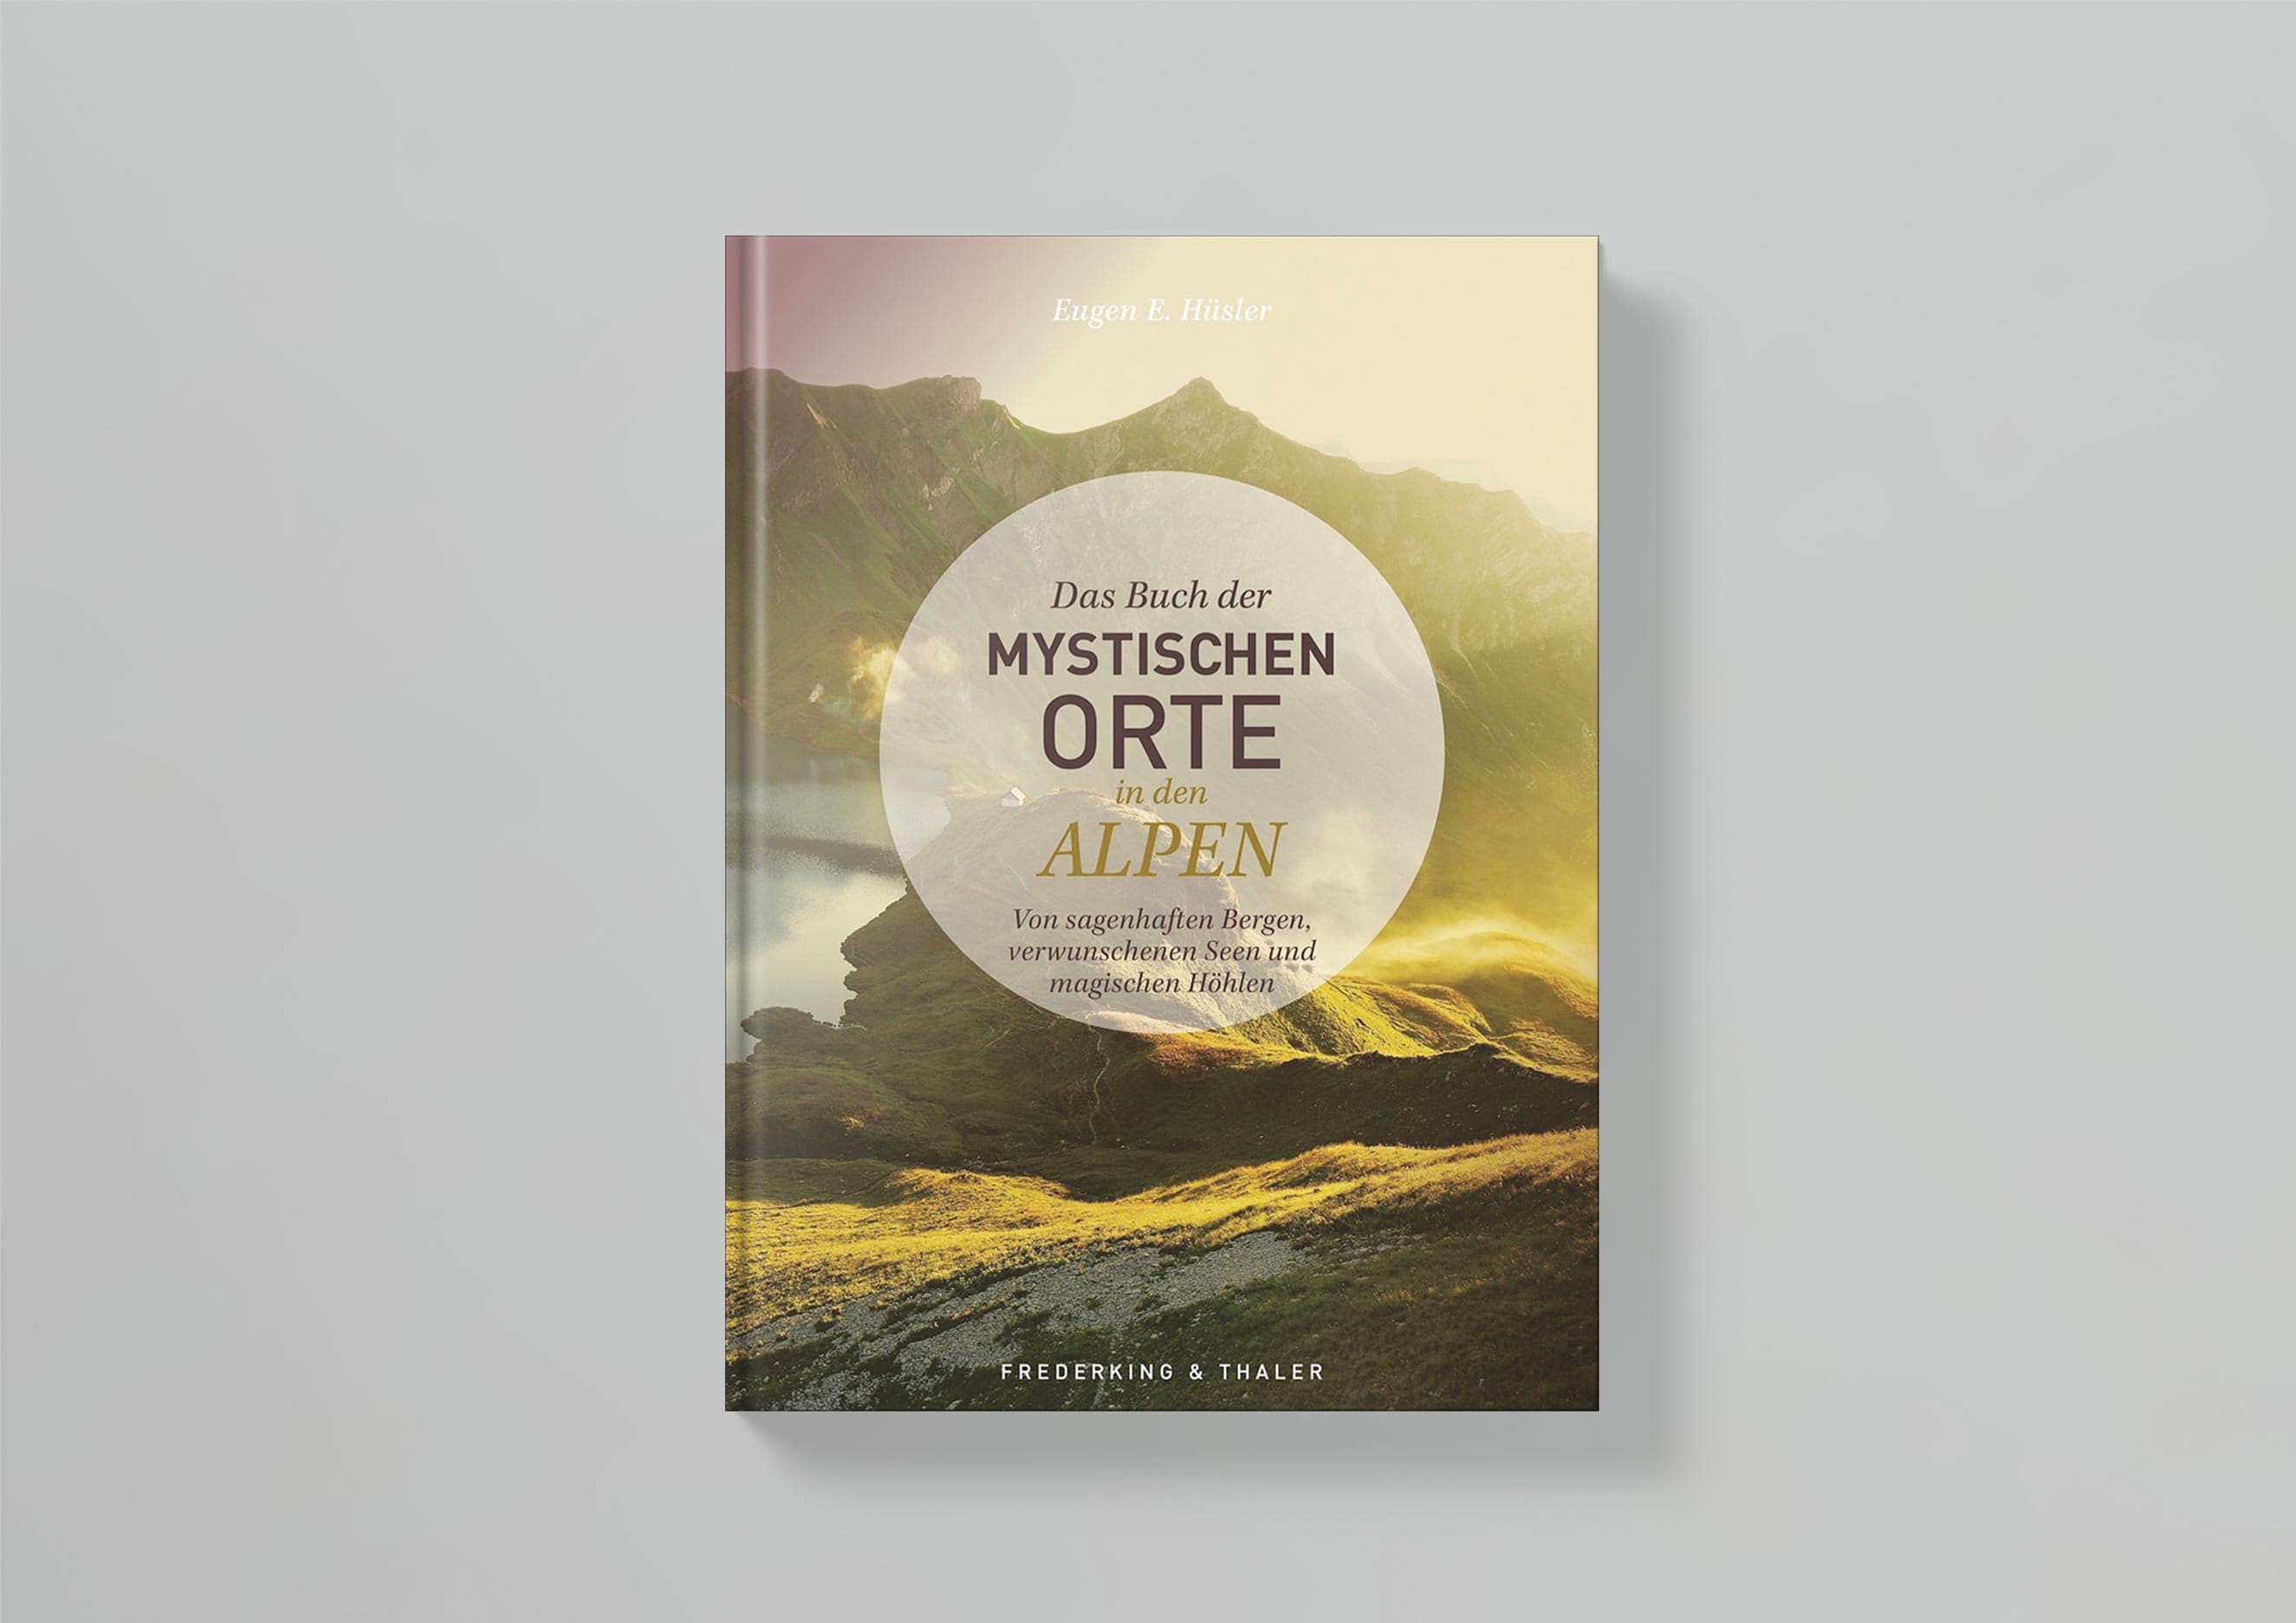 3_Frederking_Thaler_Das_Buch_der_Mystischen_Orte_in_den_Alpen_Cover_Thumbnail